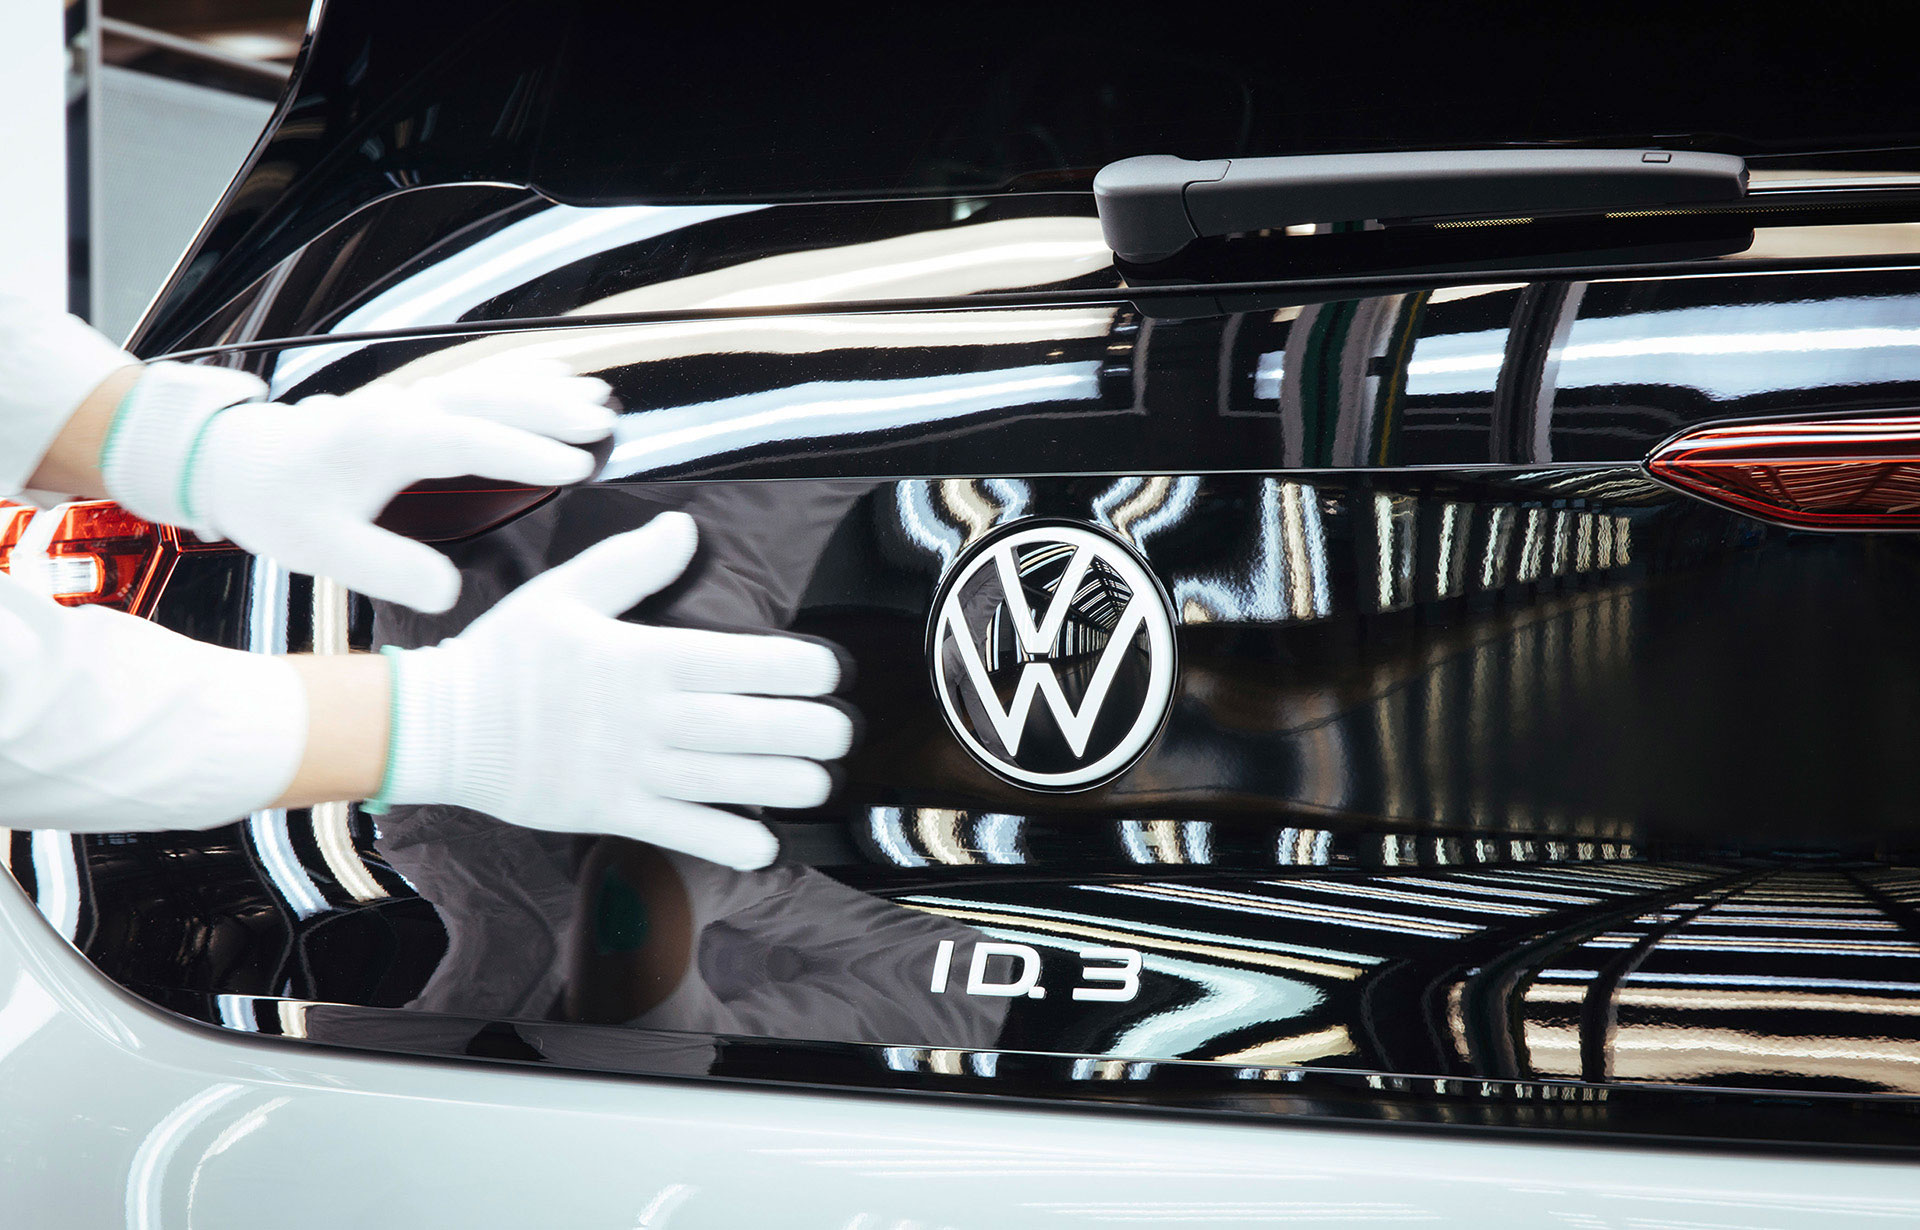 Ηλεκτρική αλλαγή φρουράς για τη Volkswagen στη Δρέσδη